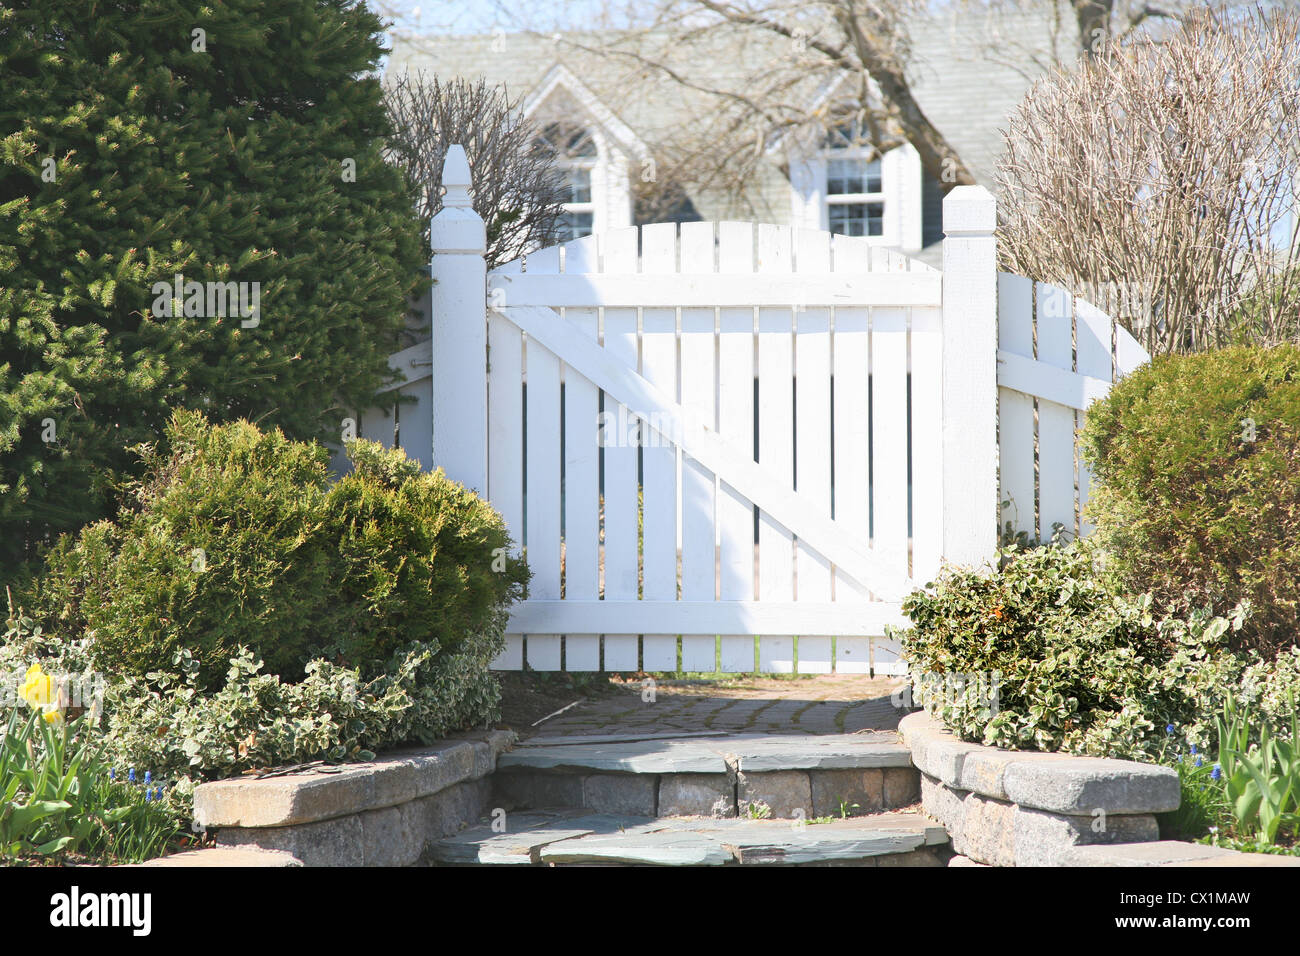 A garden gate in a residential spring garden. Stock Photo